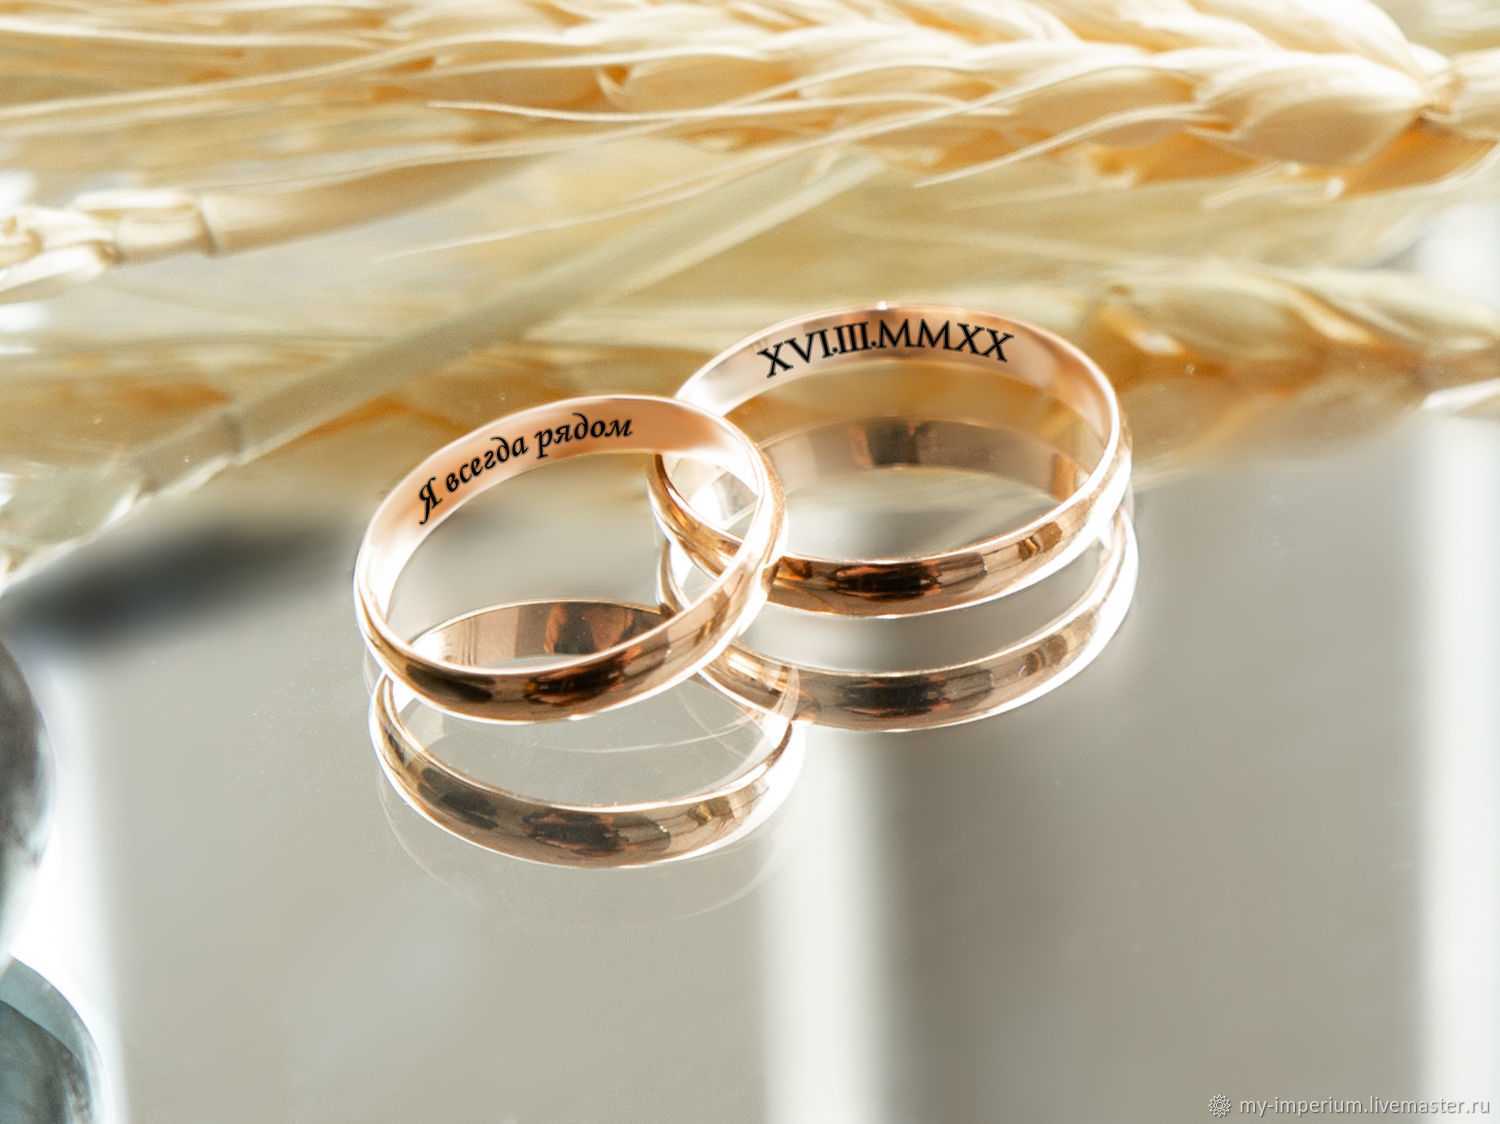 Свадебное кольцо – это символ вечной любви и единения двух сердец Каким должно быть обручальное кольцо Какие традиции связаны с этим аксессуаром и как правильно выбирать свадебные аксессуары